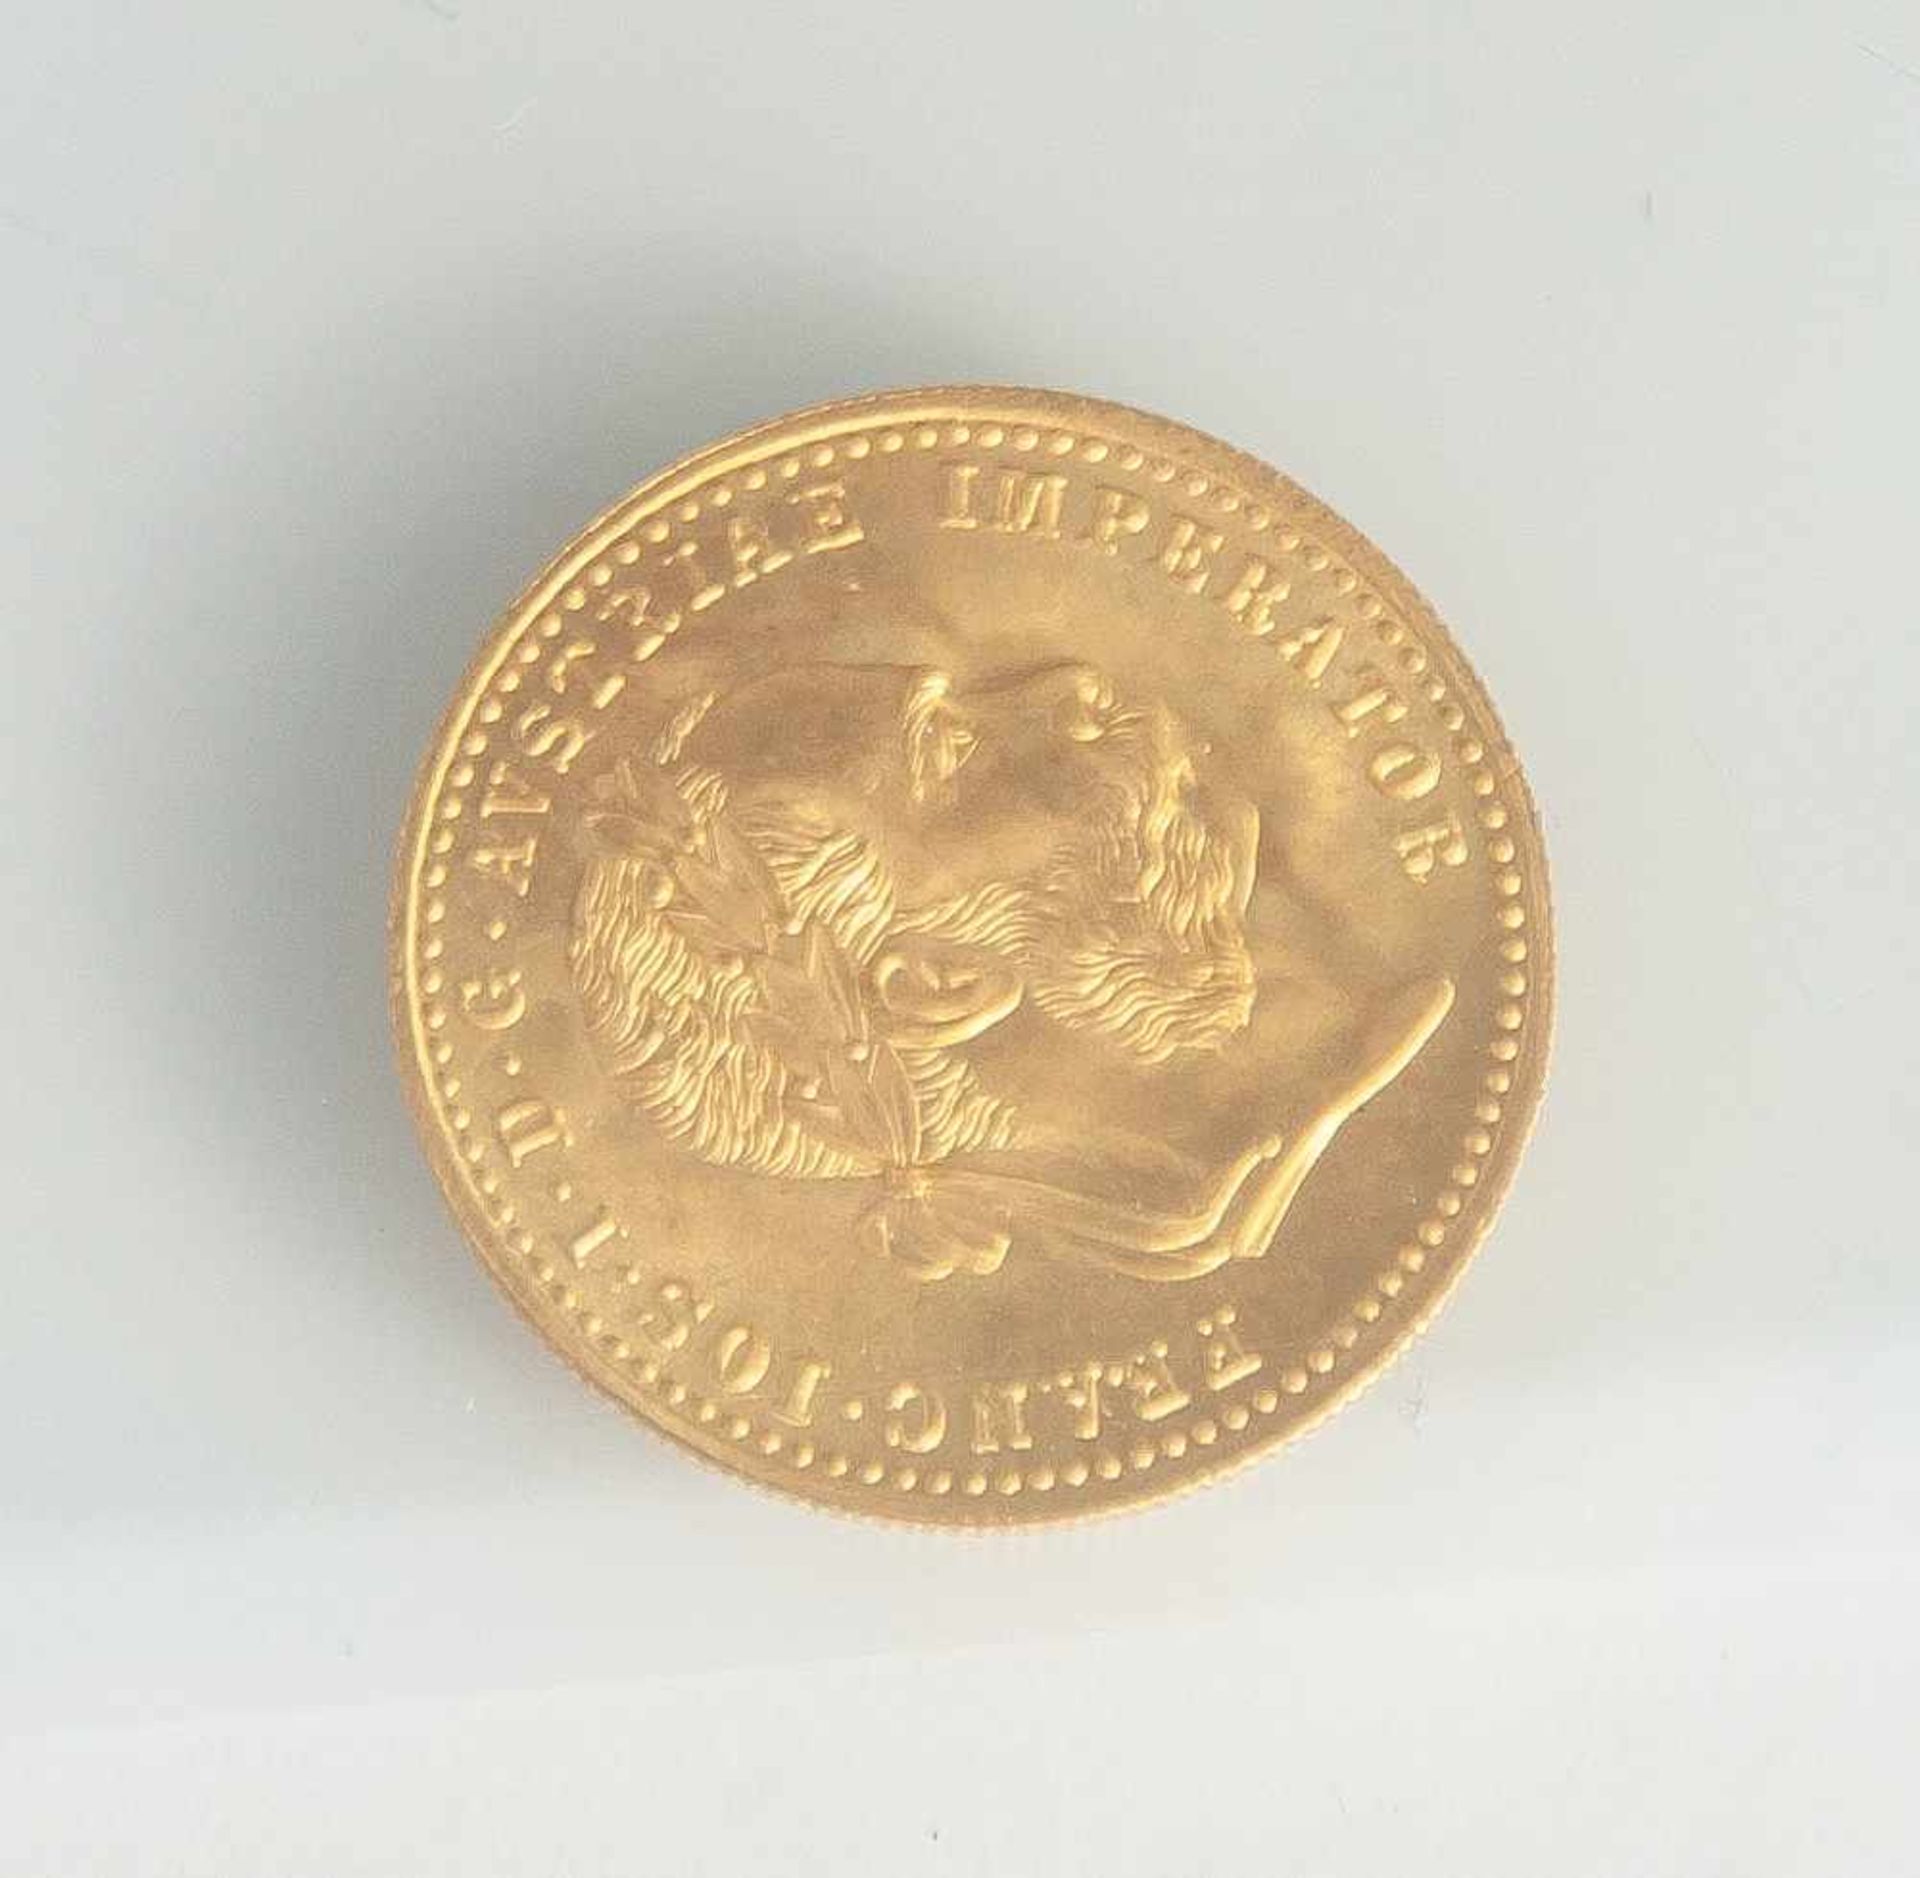 Goldmünze, 10 Kronen, Kaiser Franz Joseph I, Österreich-Ungarn, 1915, Nachprägung. 900/1000, 3,8